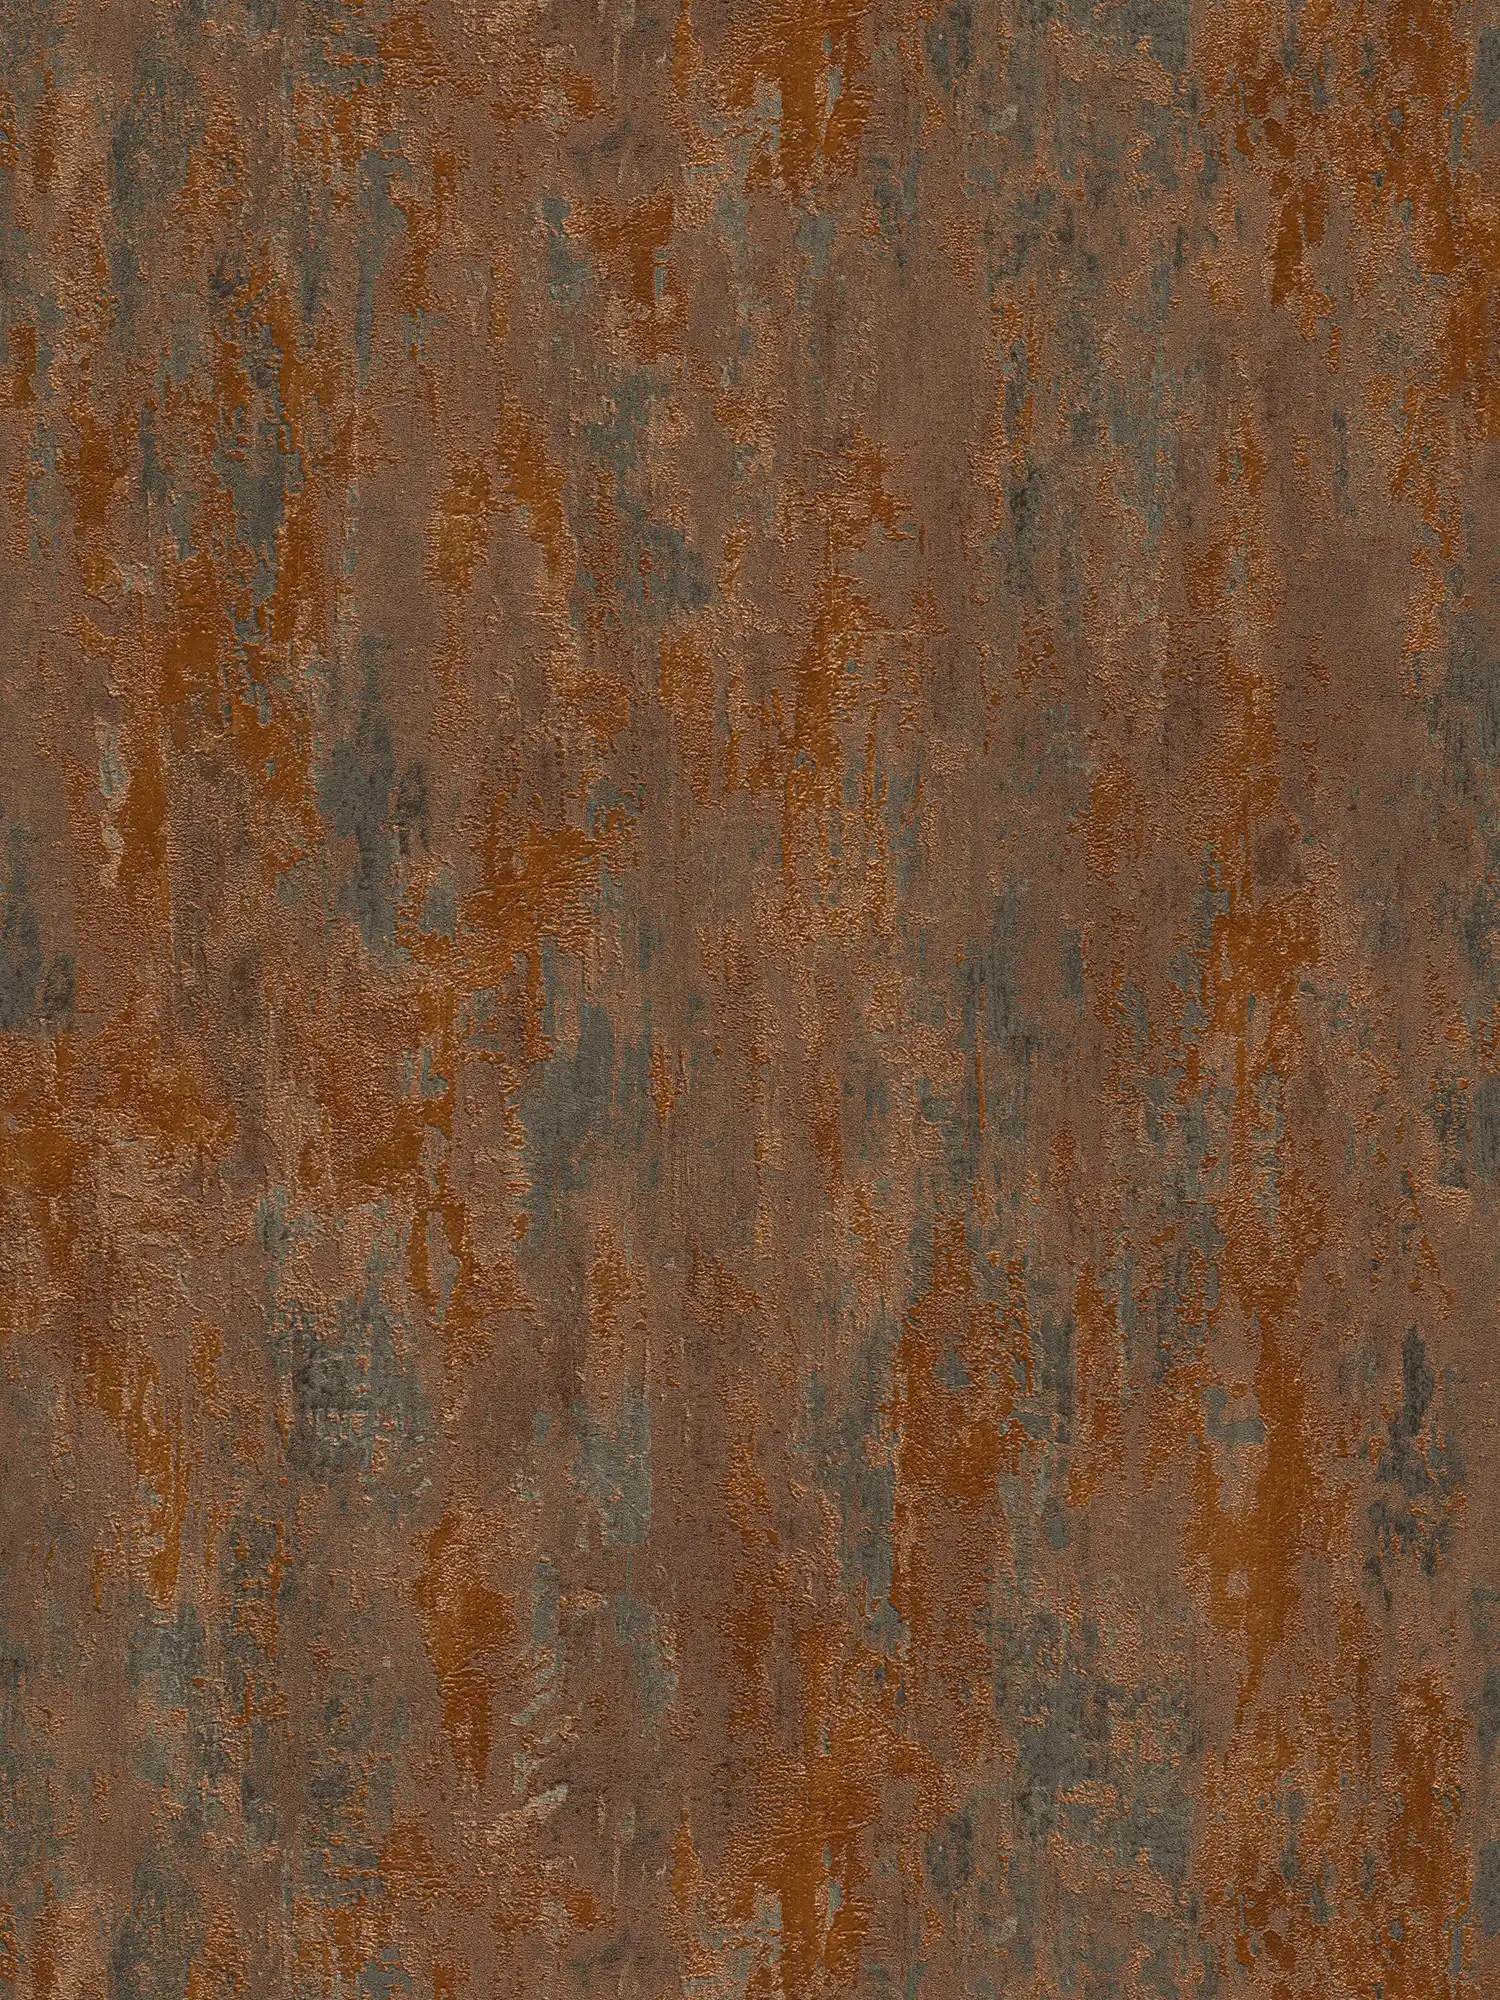 Carta da parati effetto ruggine e metallizzato in stile industriale - arancio, rame, marrone
